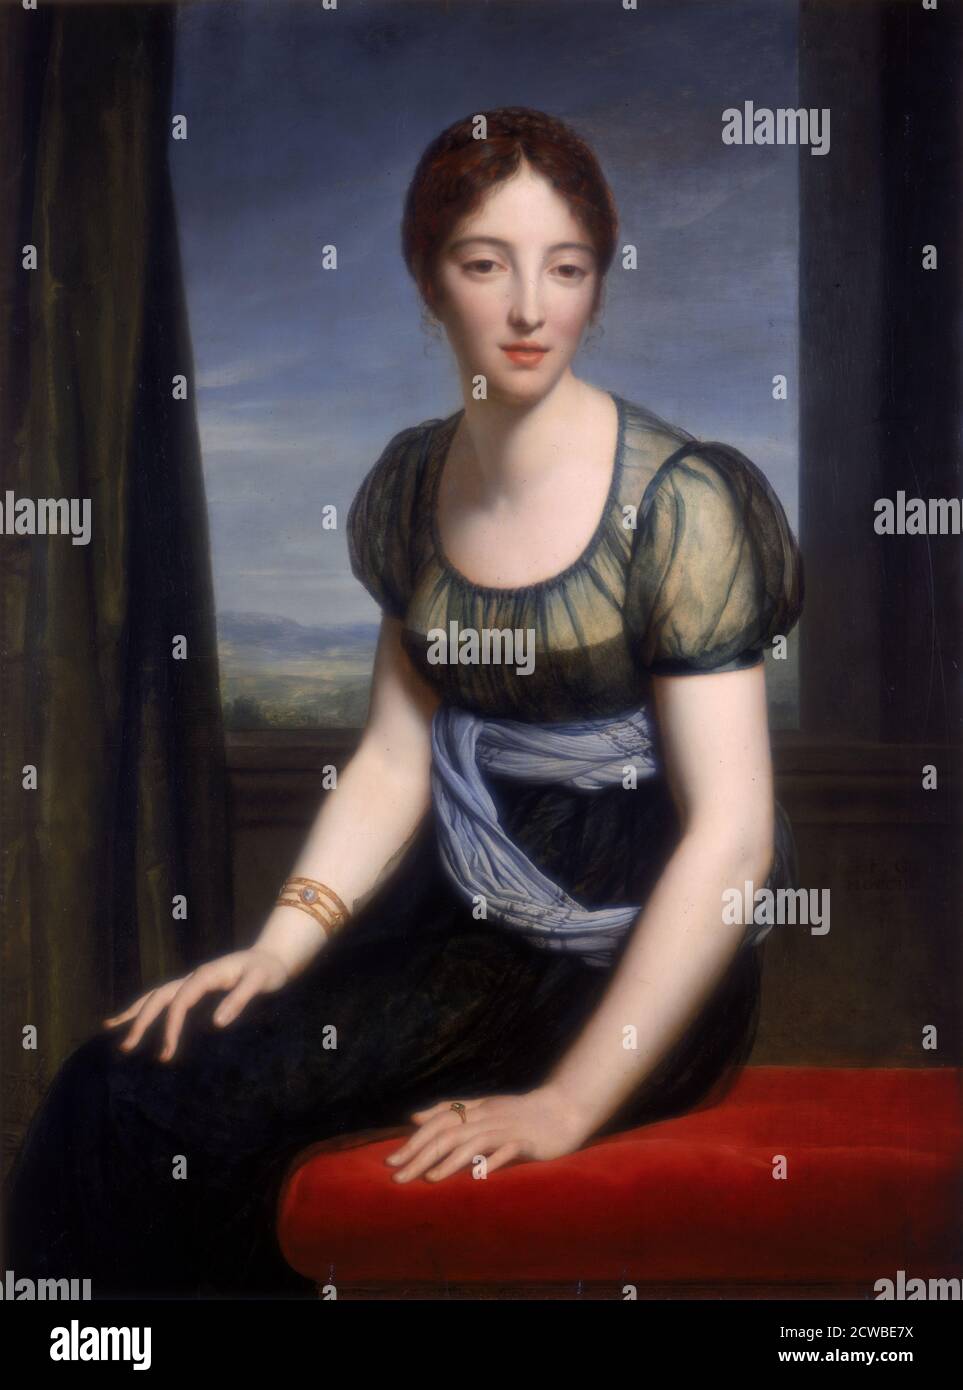 Porträt von Madame Regnault de Saint-Jean d'Angely', 1798. Künstler: Francois Pascal Simon Gerard. Francois Gerard (1770-1837) war ein prominenter französischer Maler, der in Rom geboren wurde. Stockfoto